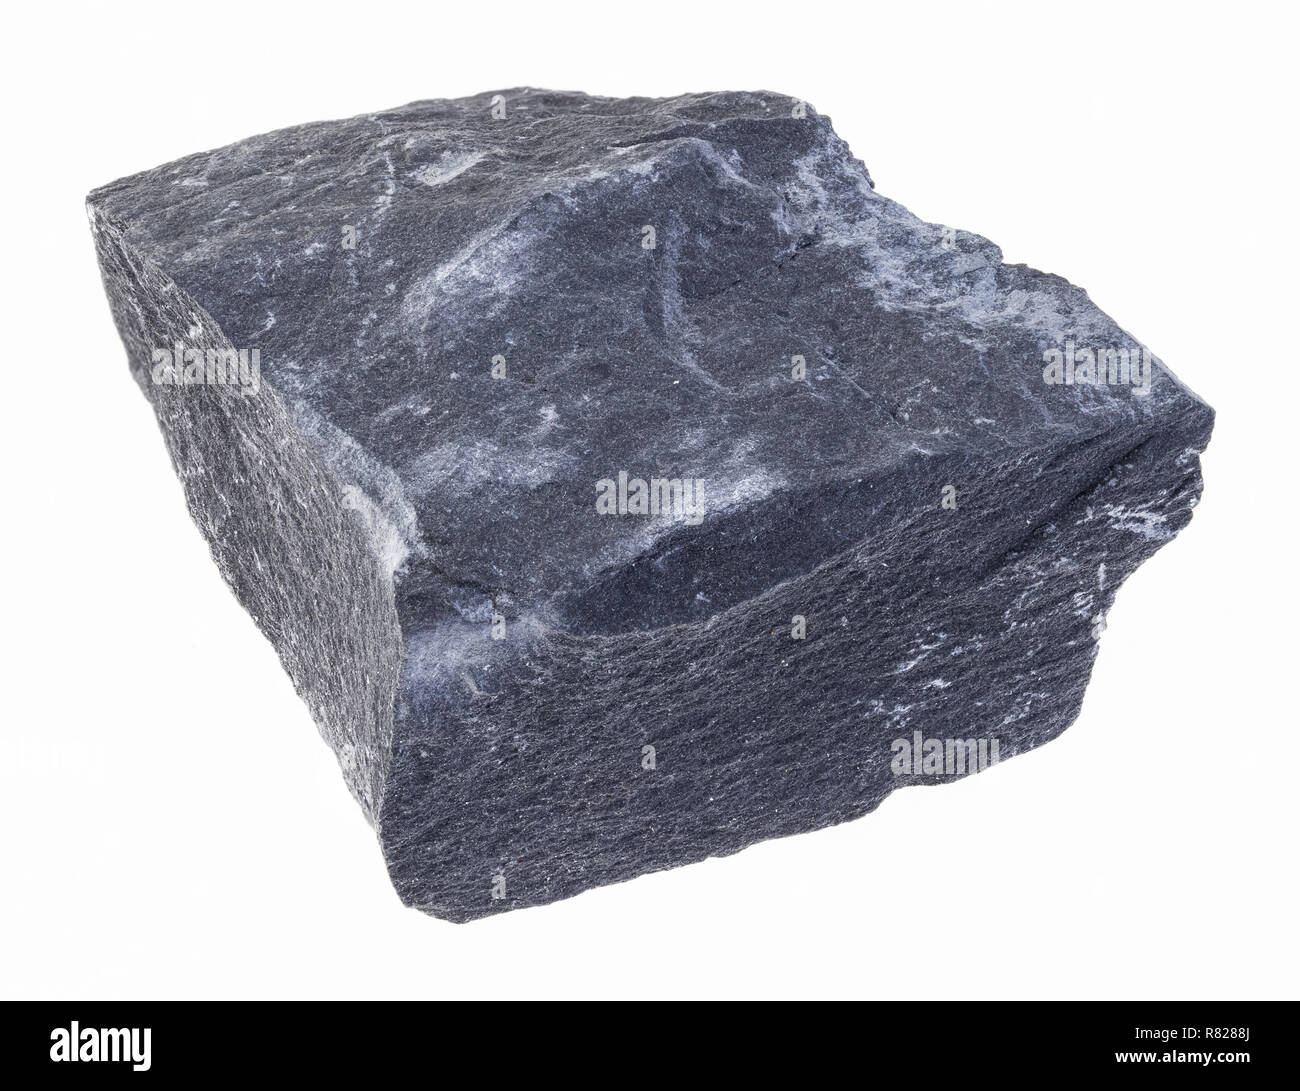 La fotografia macro di naturale minerale da collezione geologica - ruvida argillite nera pietra (mudstone) su sfondo bianco Foto Stock